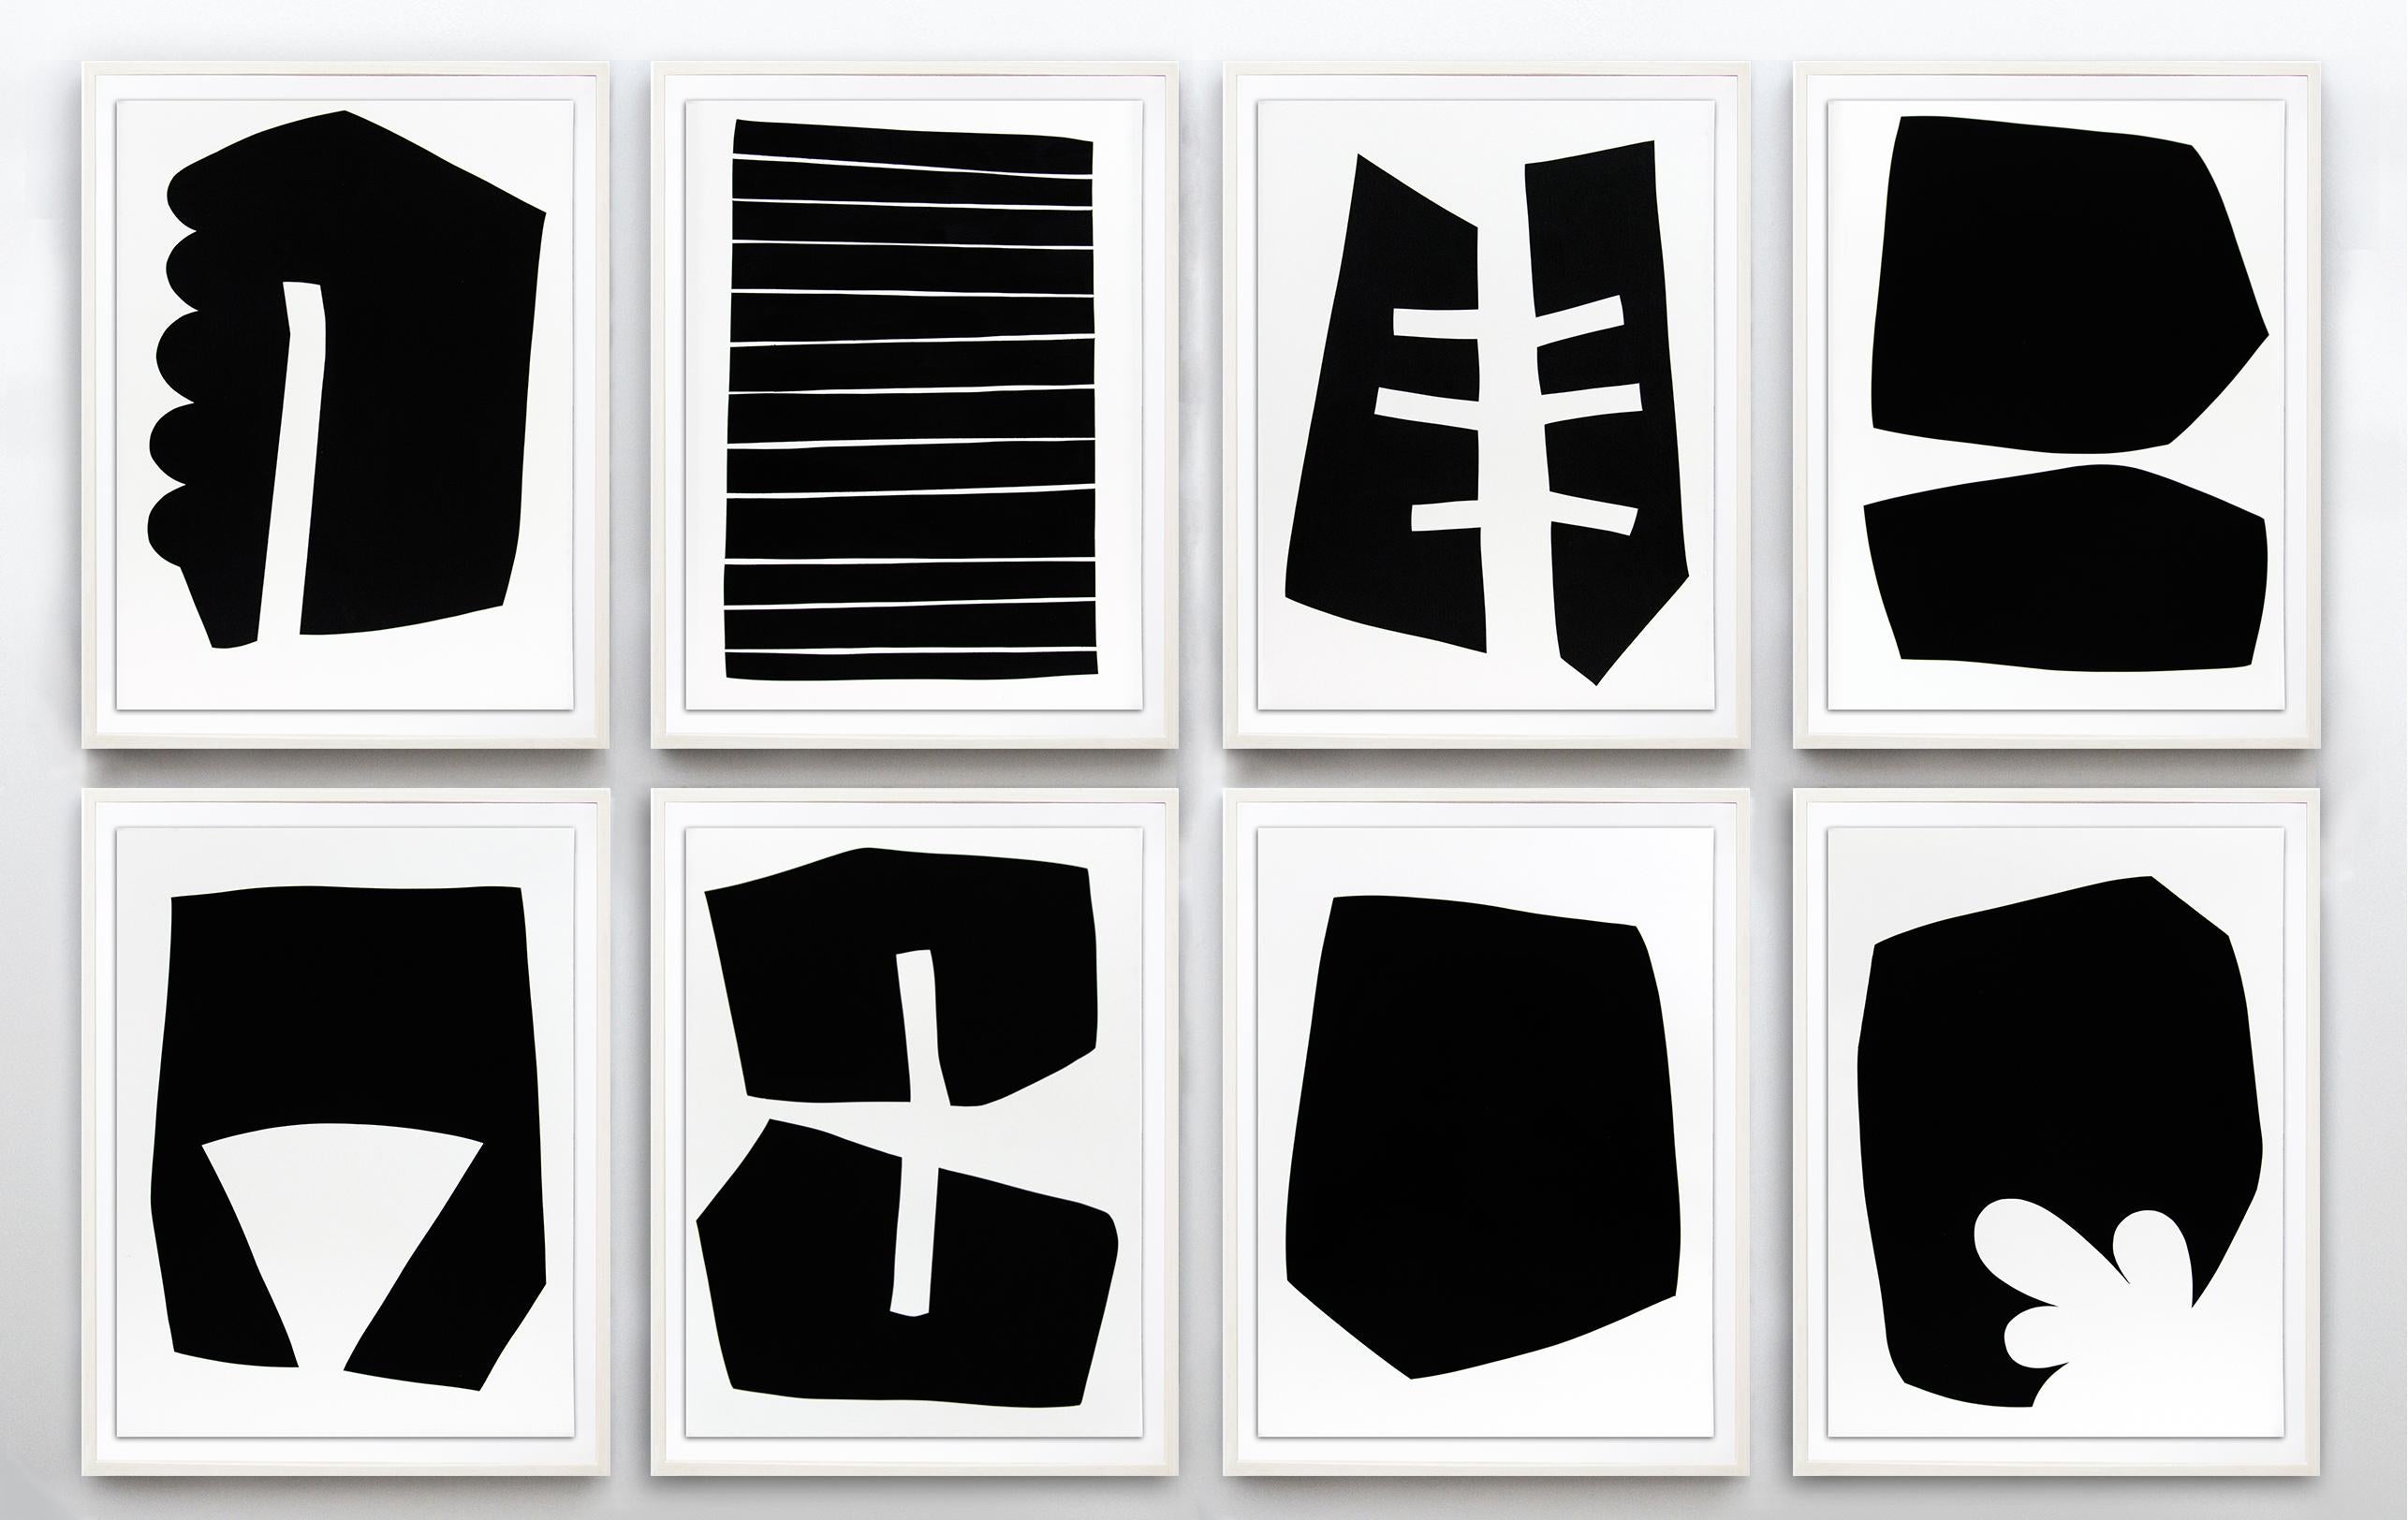 Abstract Print Aron Hill - Suite de huit tirages (édition 9/20) - série de formes abstraites sur papier